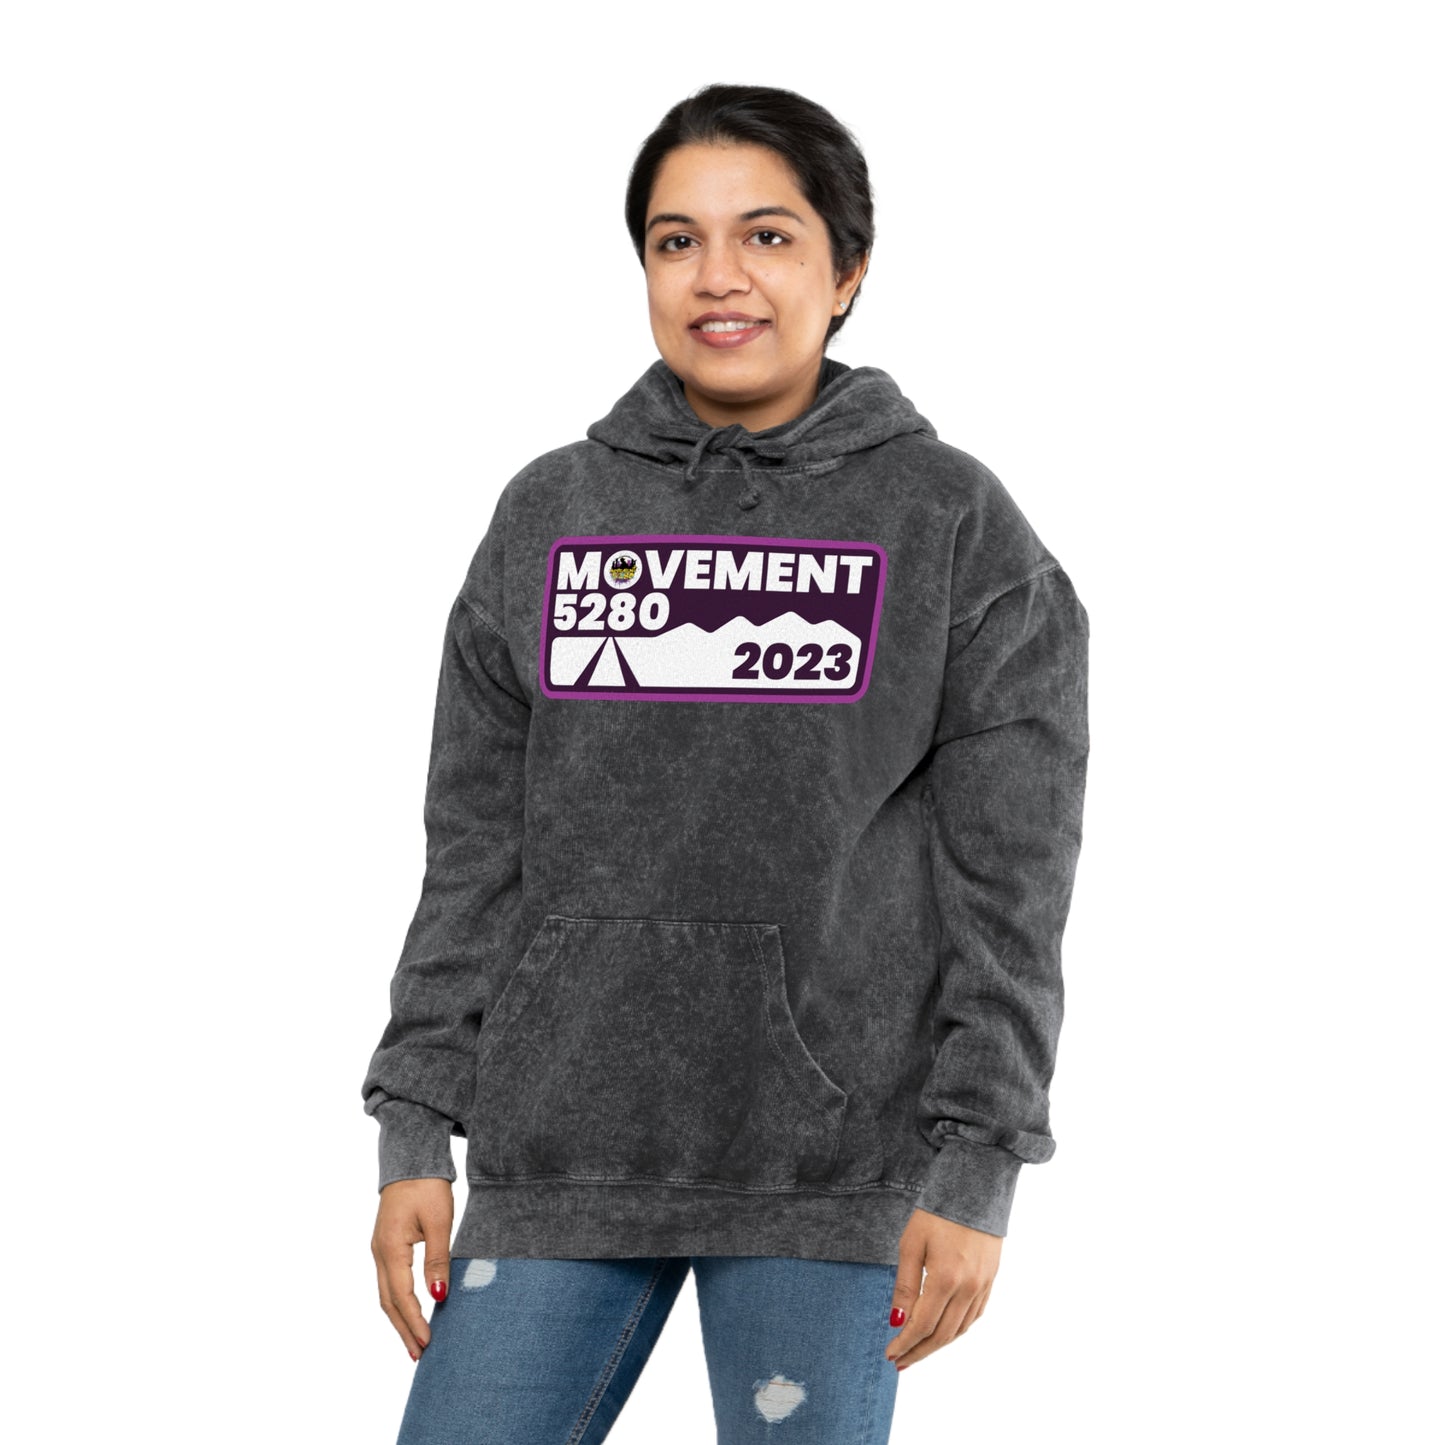 Movement 5280 2023 Design - Unisex Mineral Wash Hoodie